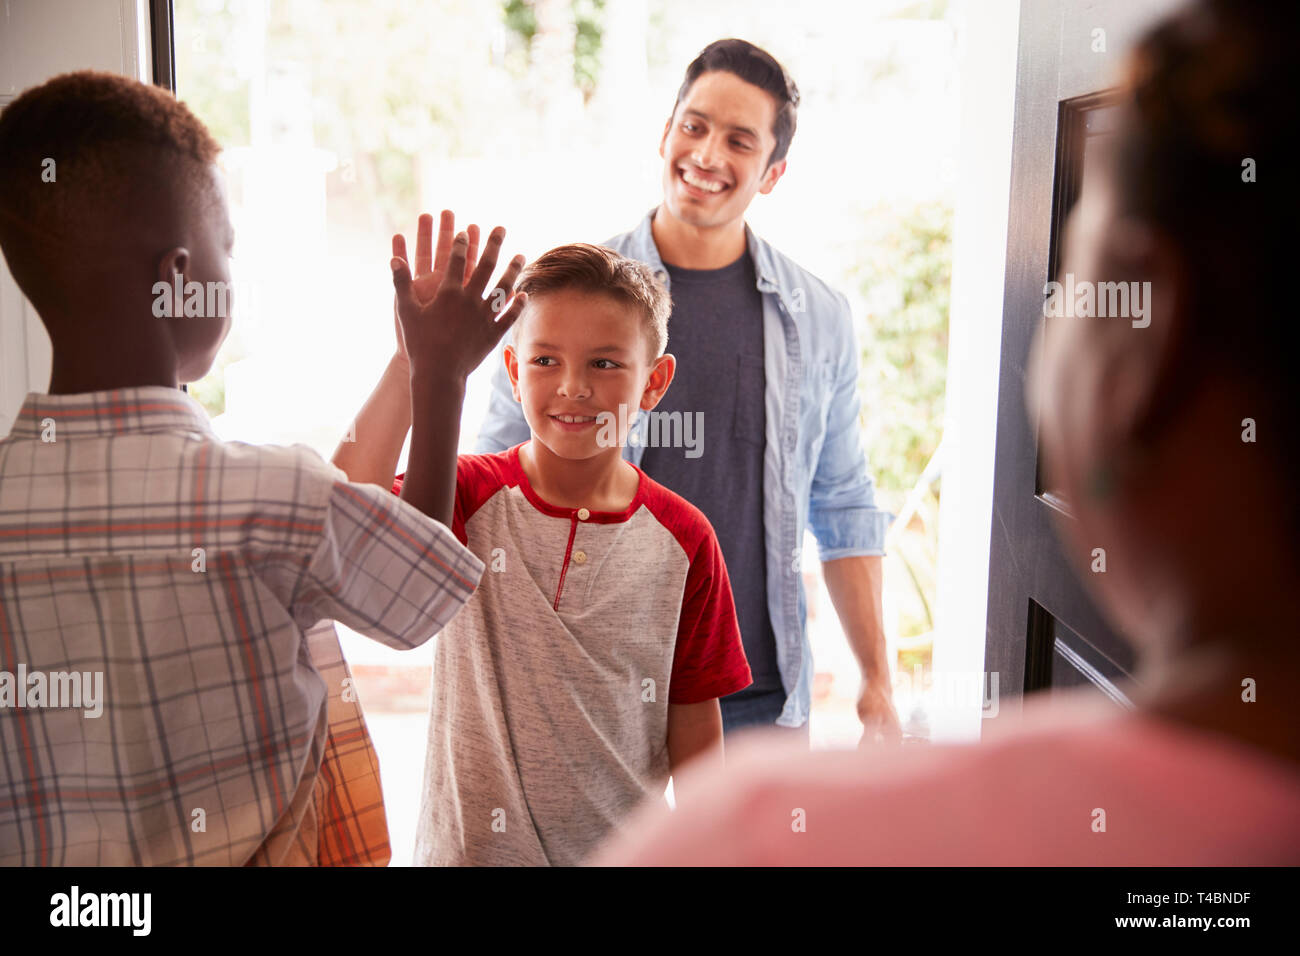 Les deux pre-teen boys high five au porte ouverte, comme papa baisse son fils à ses amis Banque D'Images